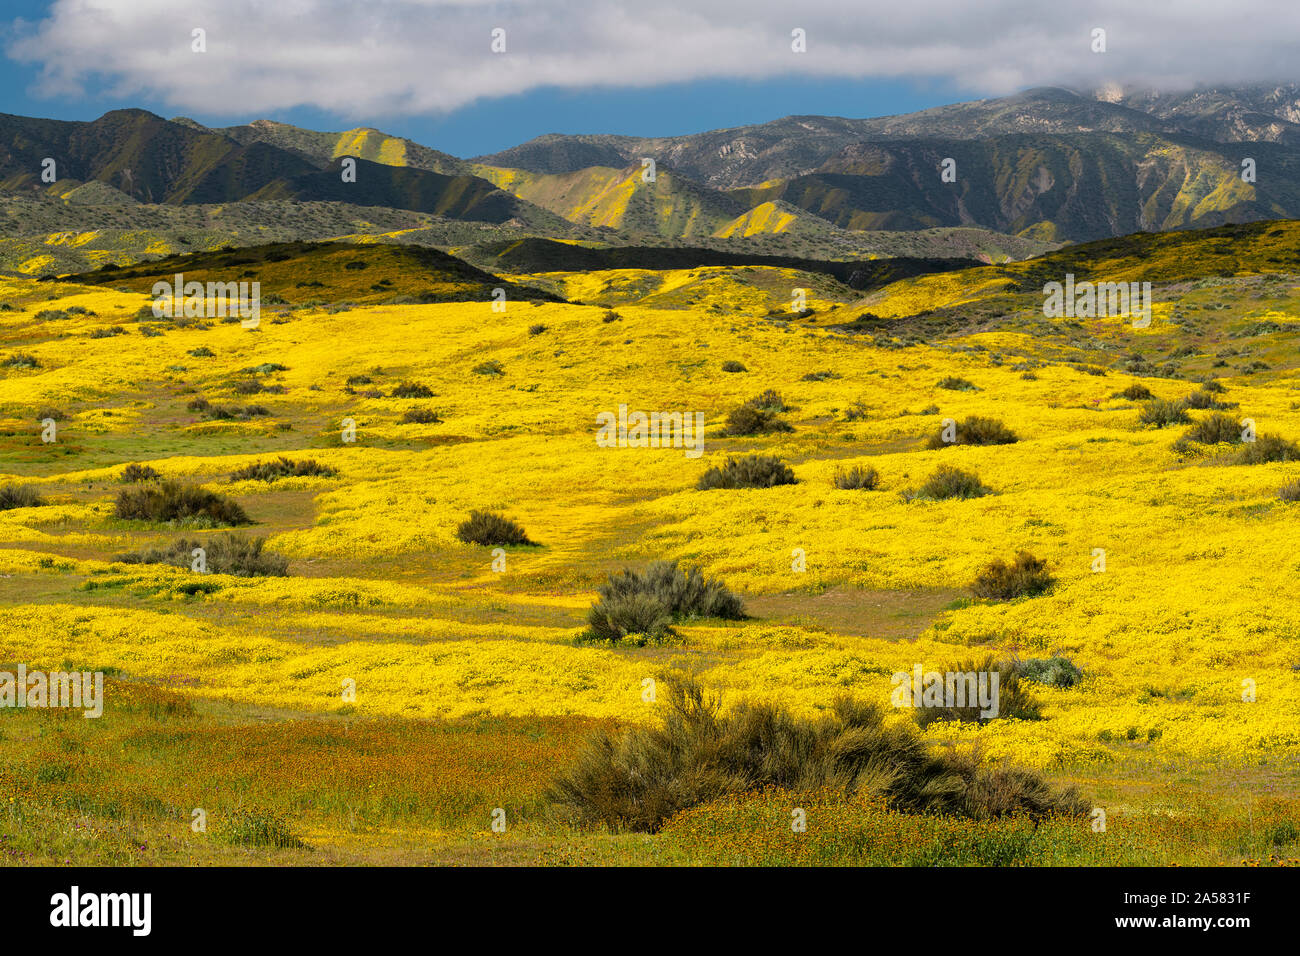 Paysage avec des montagnes de fleurs sauvages jaunes et gamme Caliente, Carrizo Plain National Monument (Californie, USA Banque D'Images